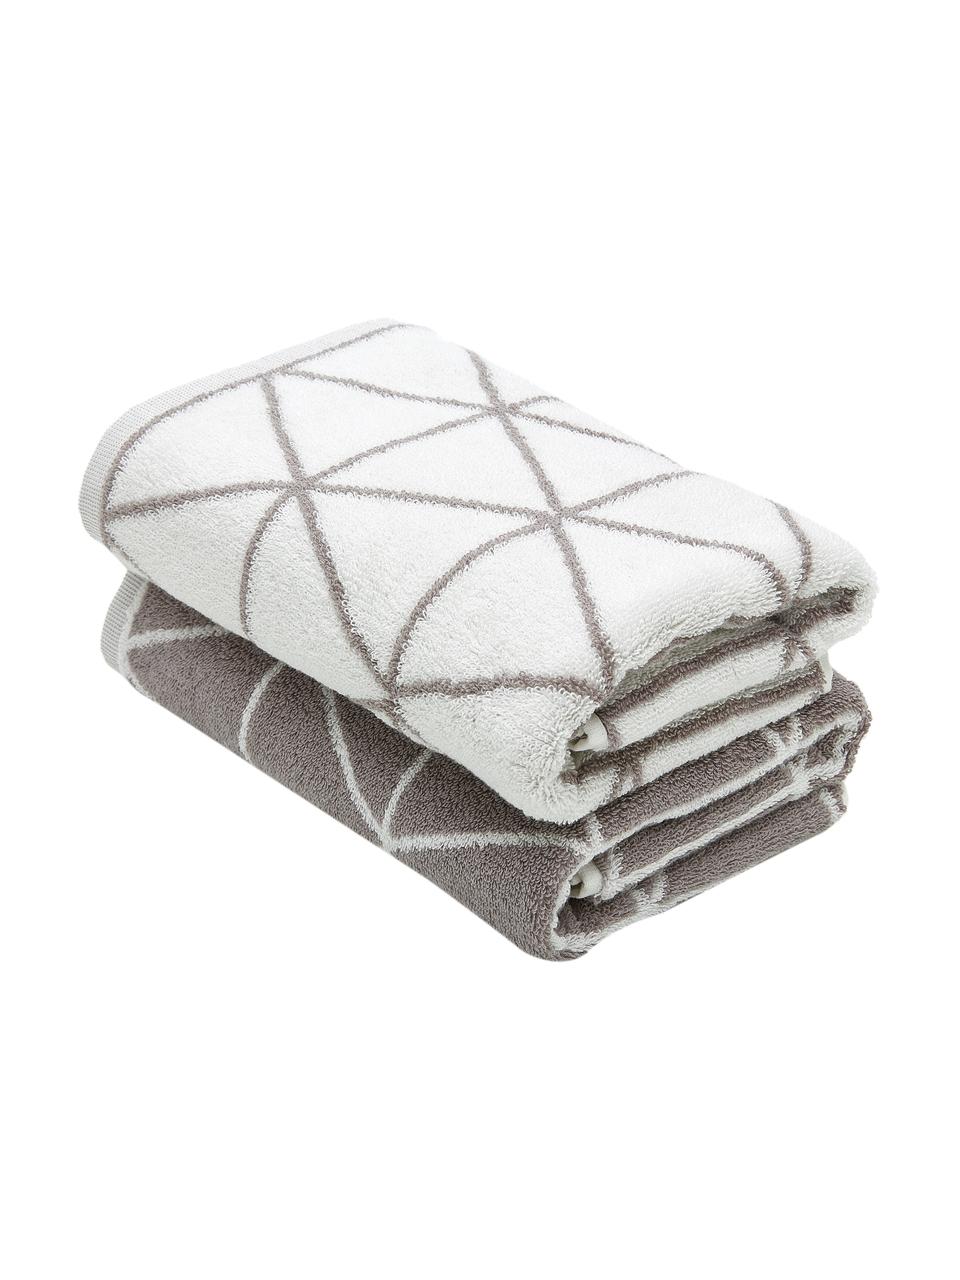 Dwustronny ręcznik Elina, 2 szt., Taupe, kremowobiały, Ręcznik do rąk, S 50 x D 100 cm, 2 szt.